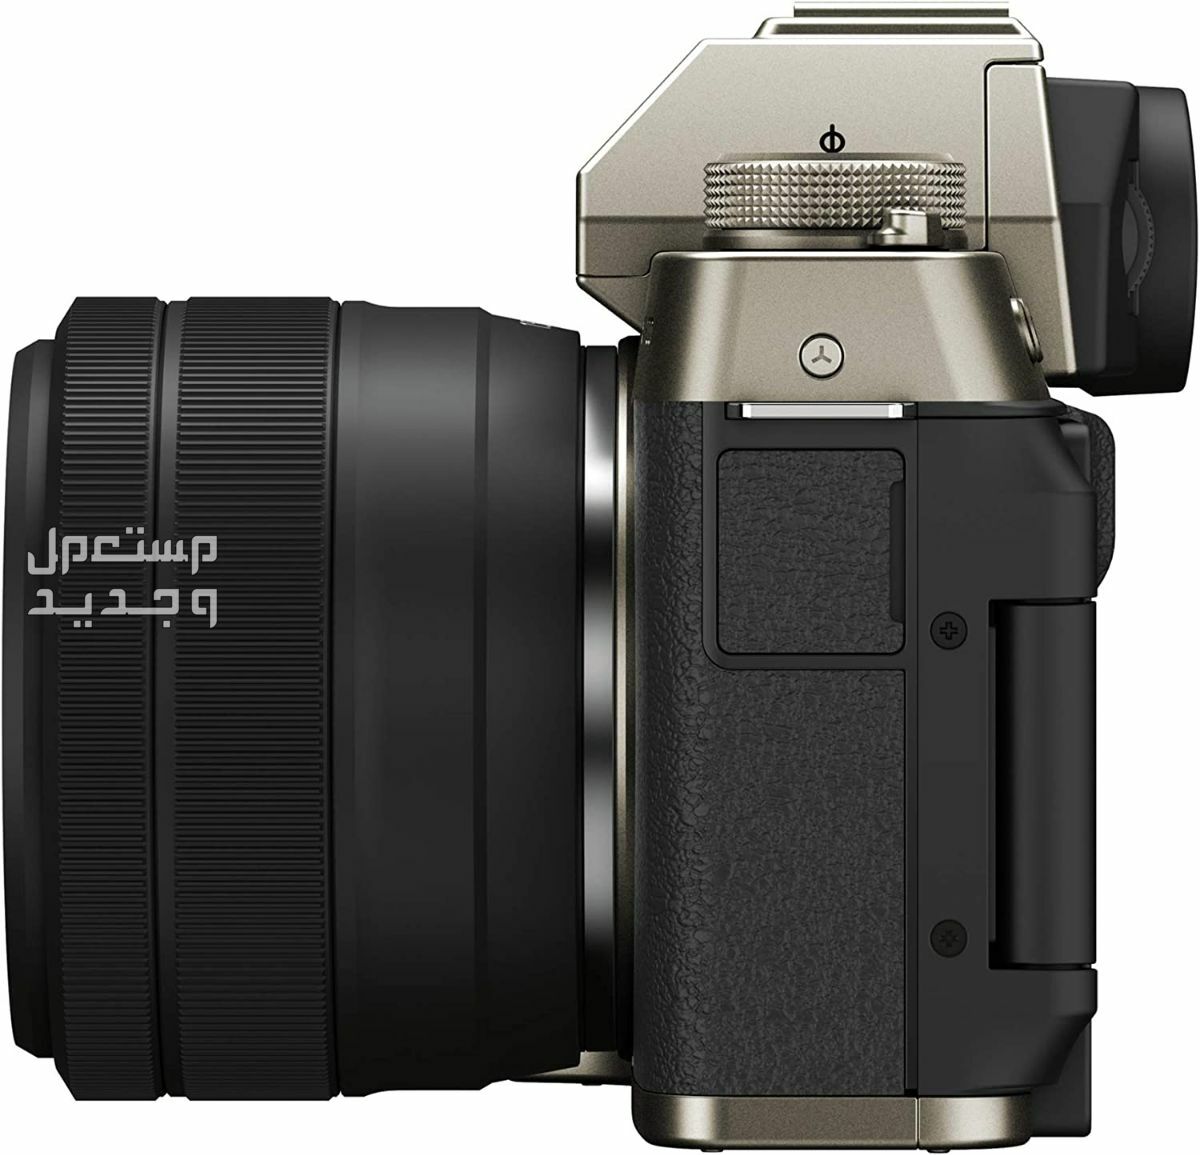 10 كاميرات تصوير ماركات عالمية بأسعار رخيصة في قطر سعر كاميرا Fujifilm X-T200